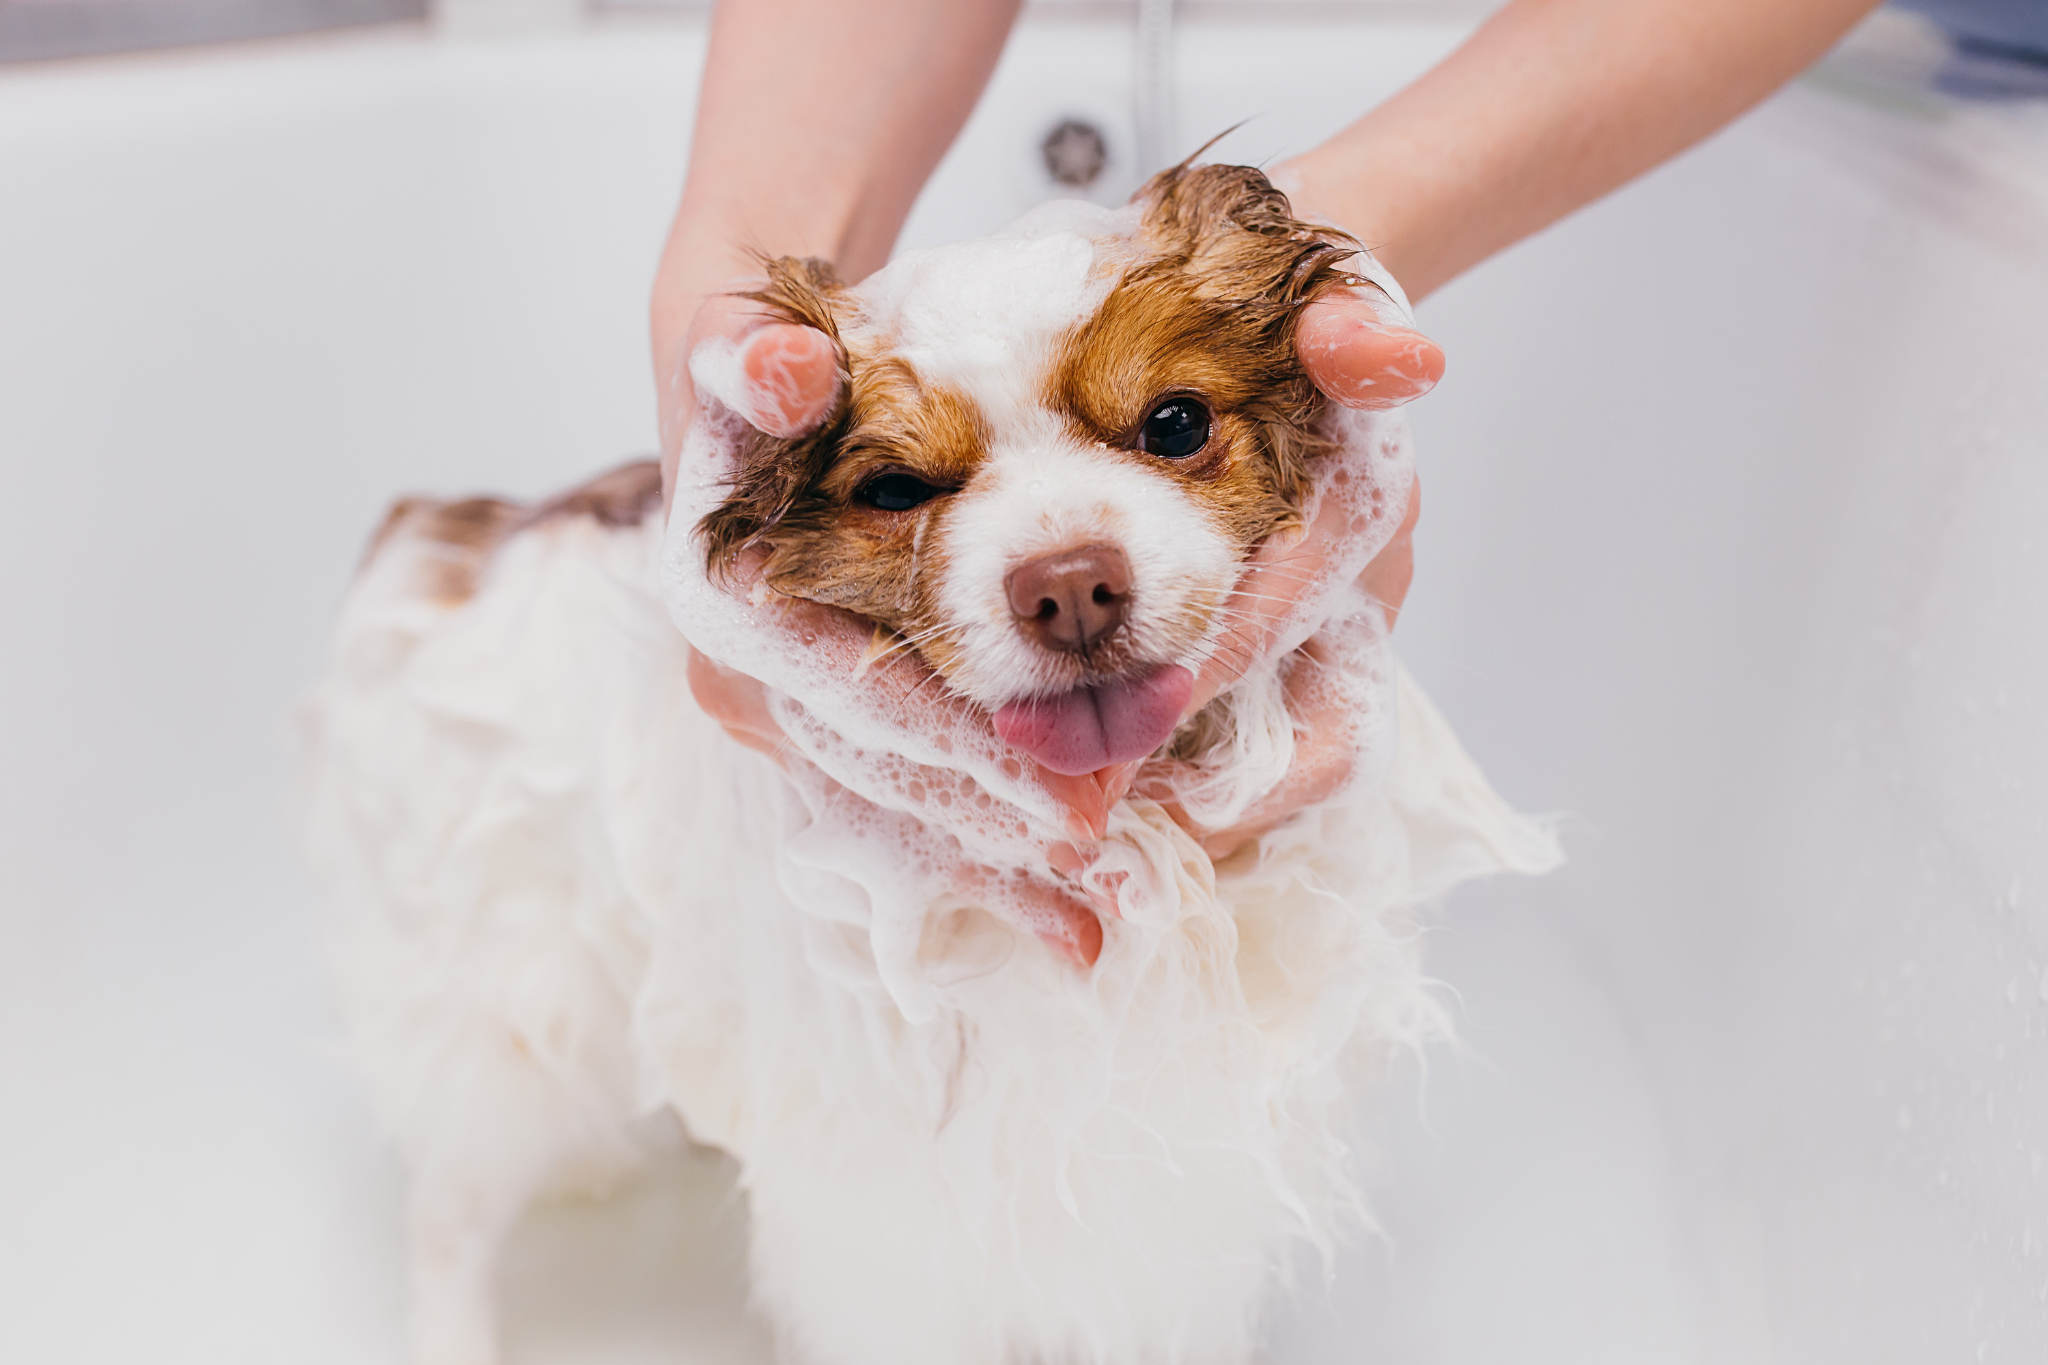 A puppy getting a bath